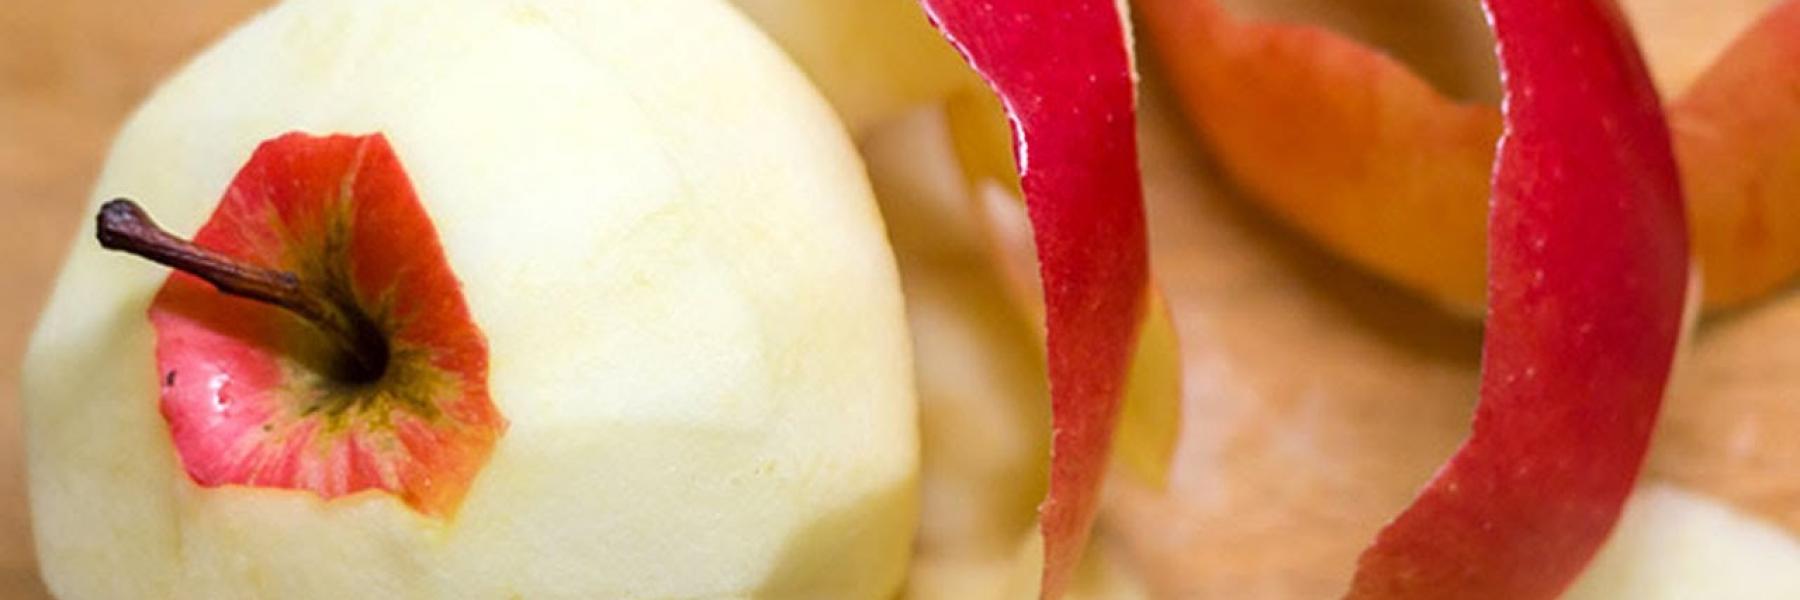 استخدامات لقشور التفاح